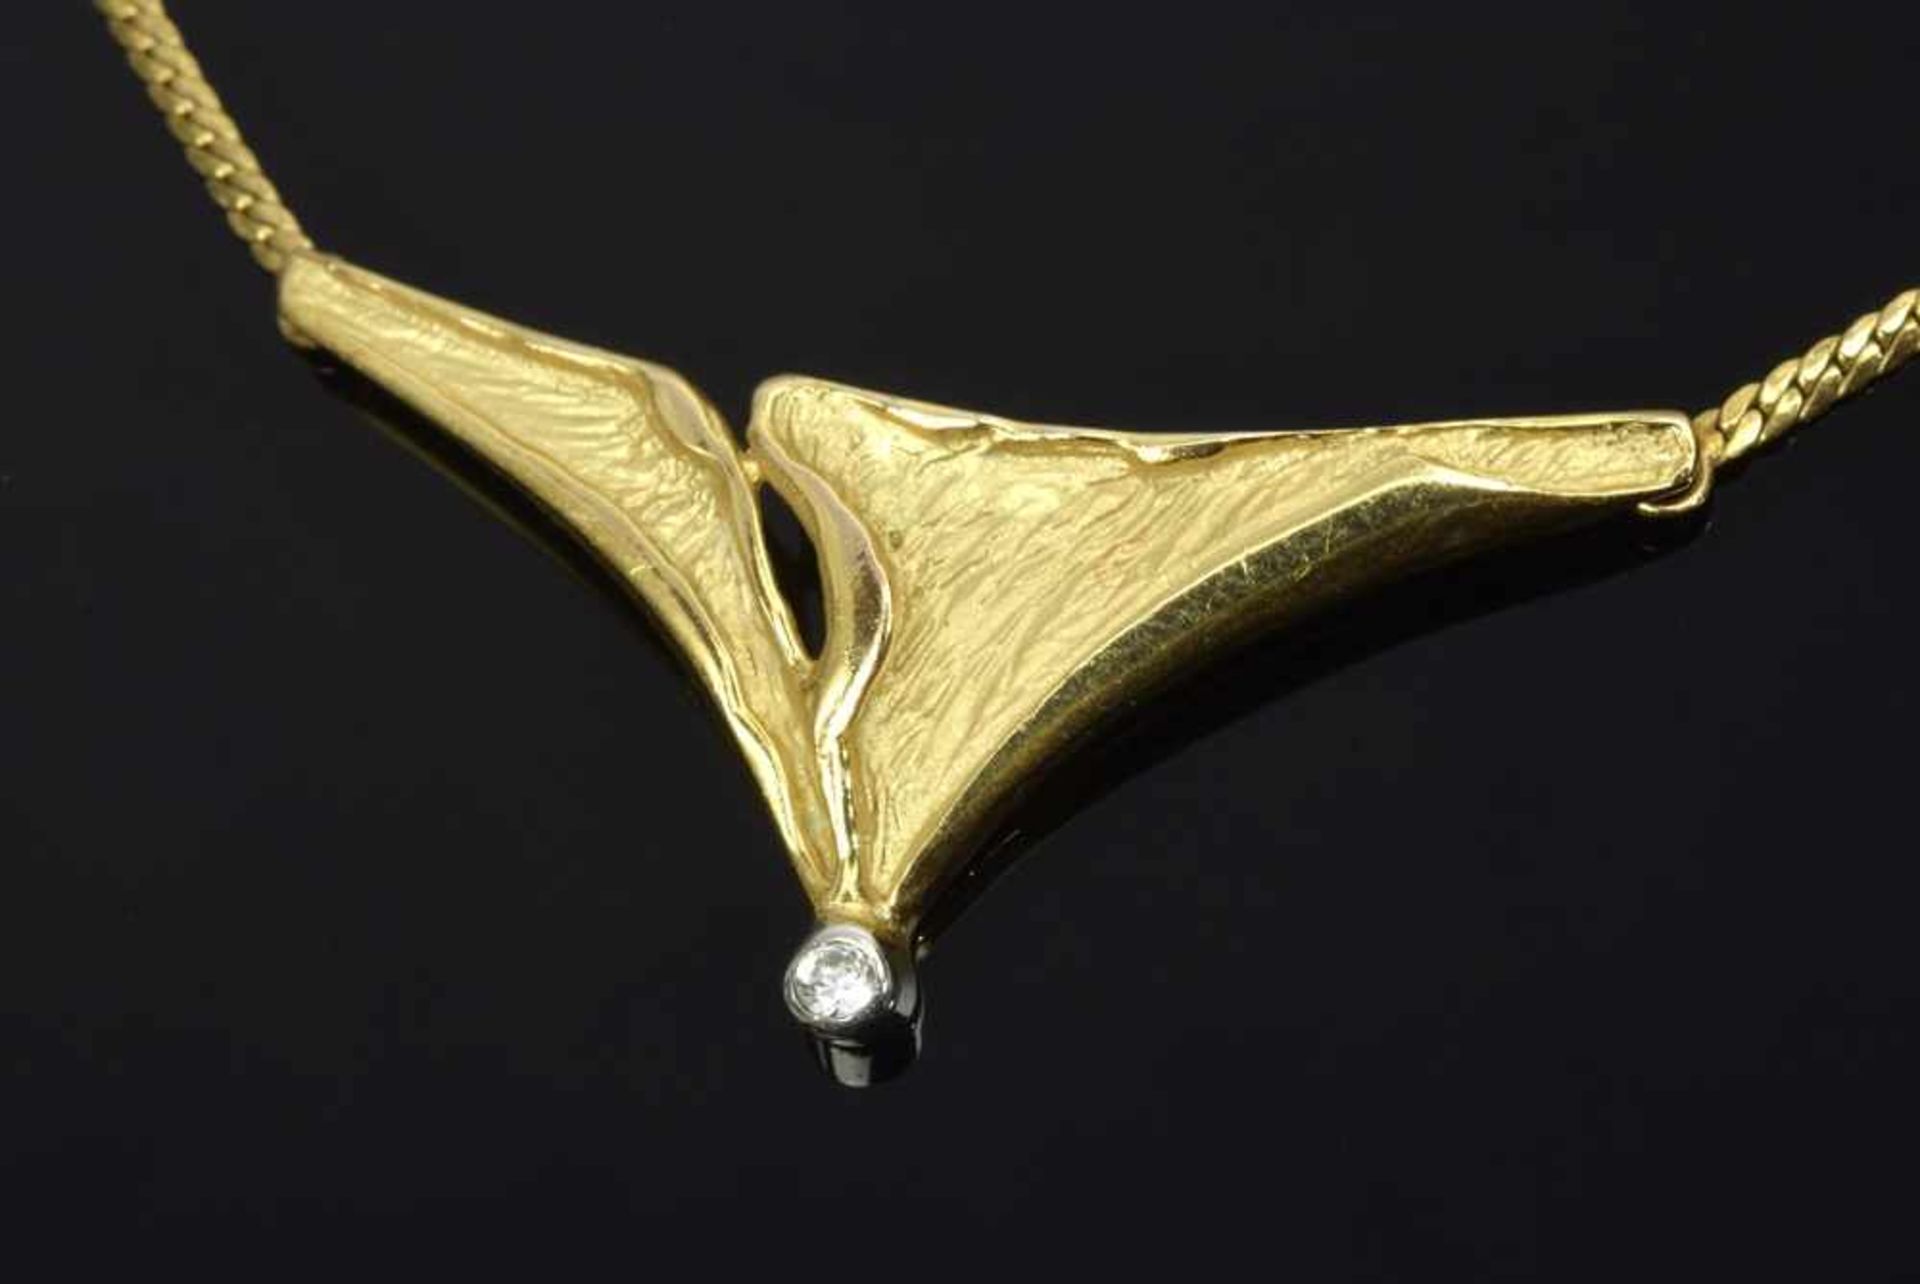 GG 333 Collier mit modernem Mittelteil und 8/8 Diamant, 5,2g, L. 42cm YG 333 Necklace with modern